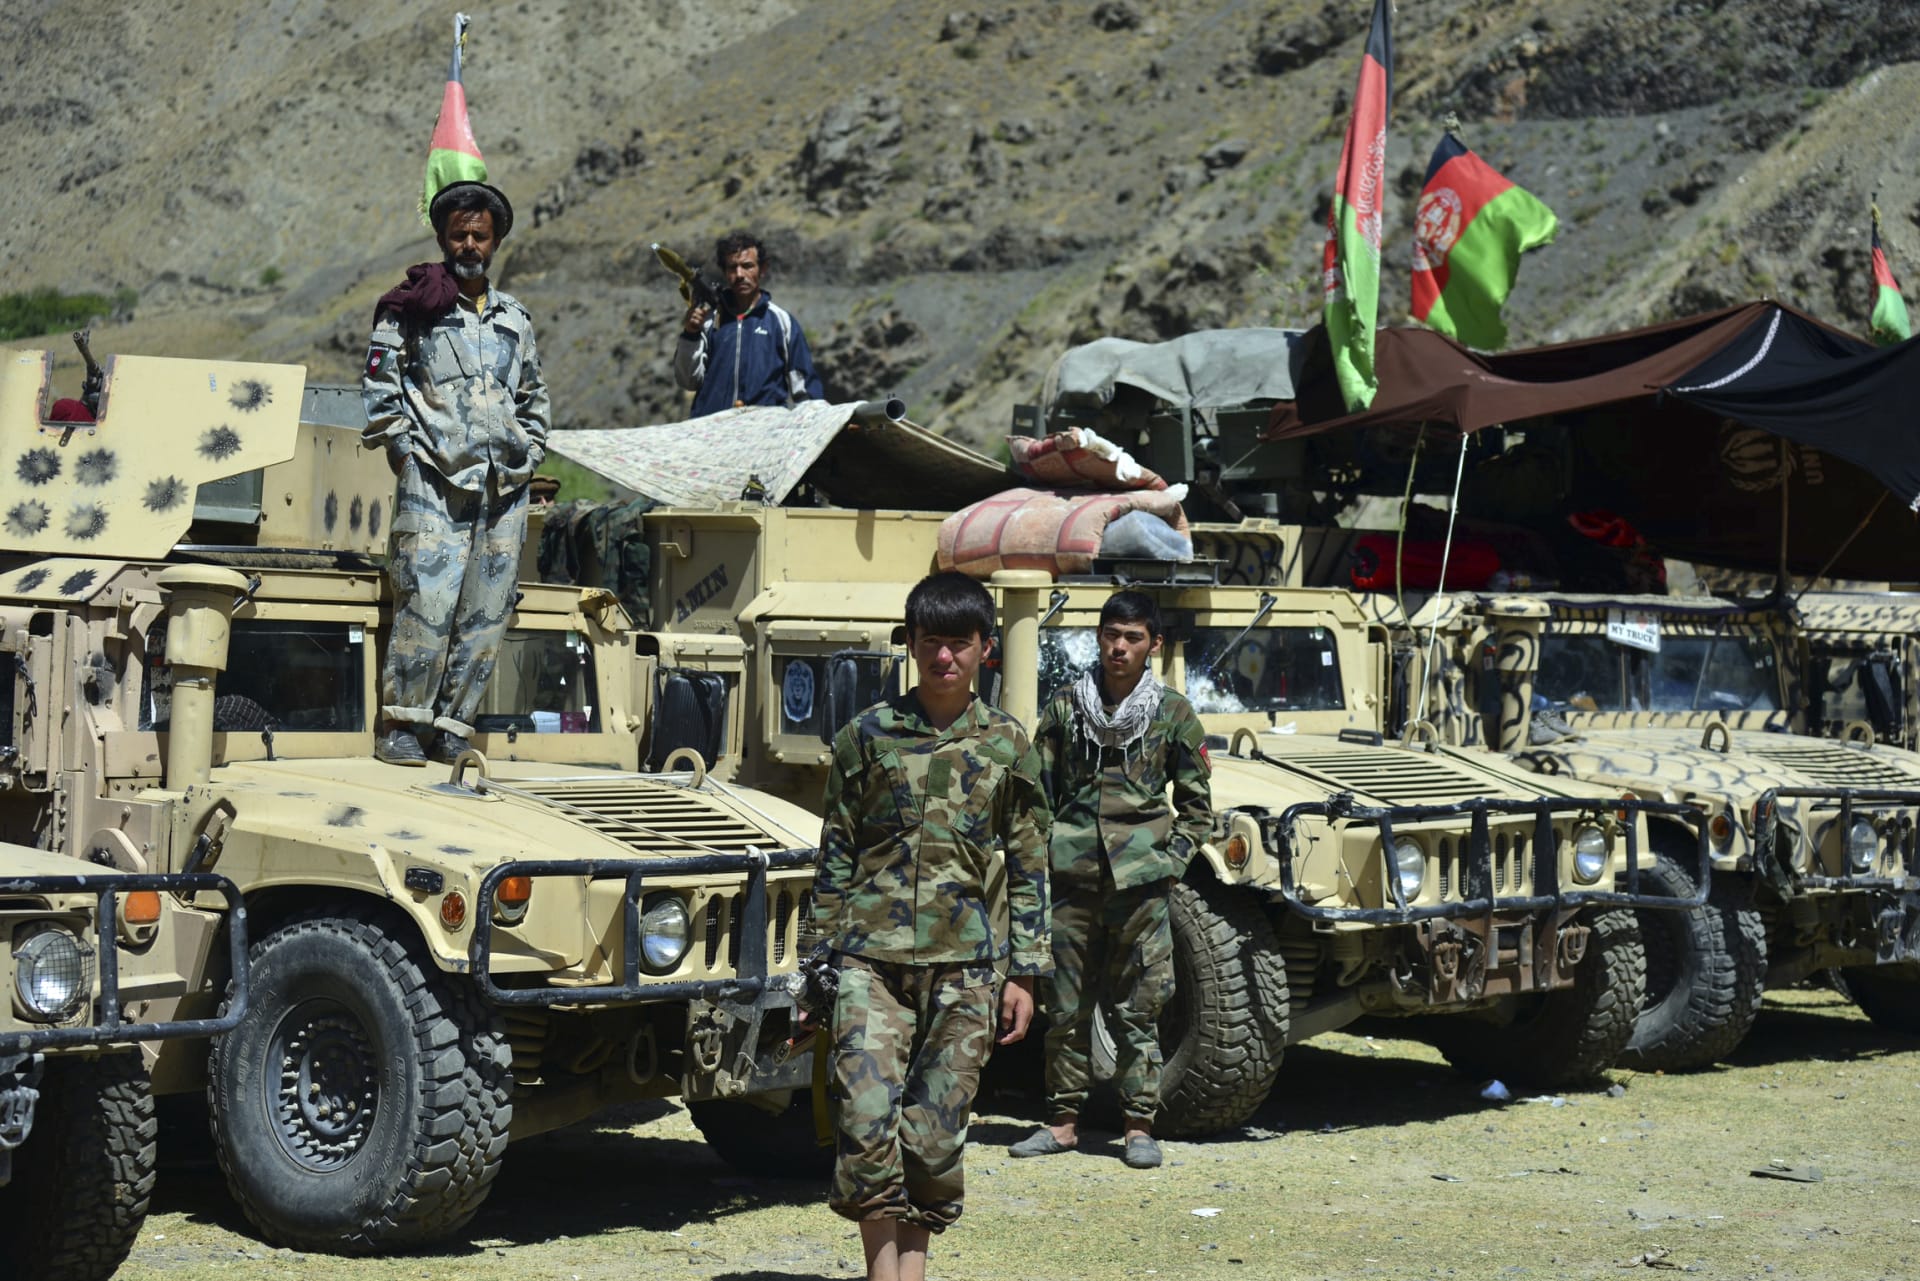 Odboj z afghánského údolí Pandžšír chce s Tálibánem bojovat až do posledních sil.